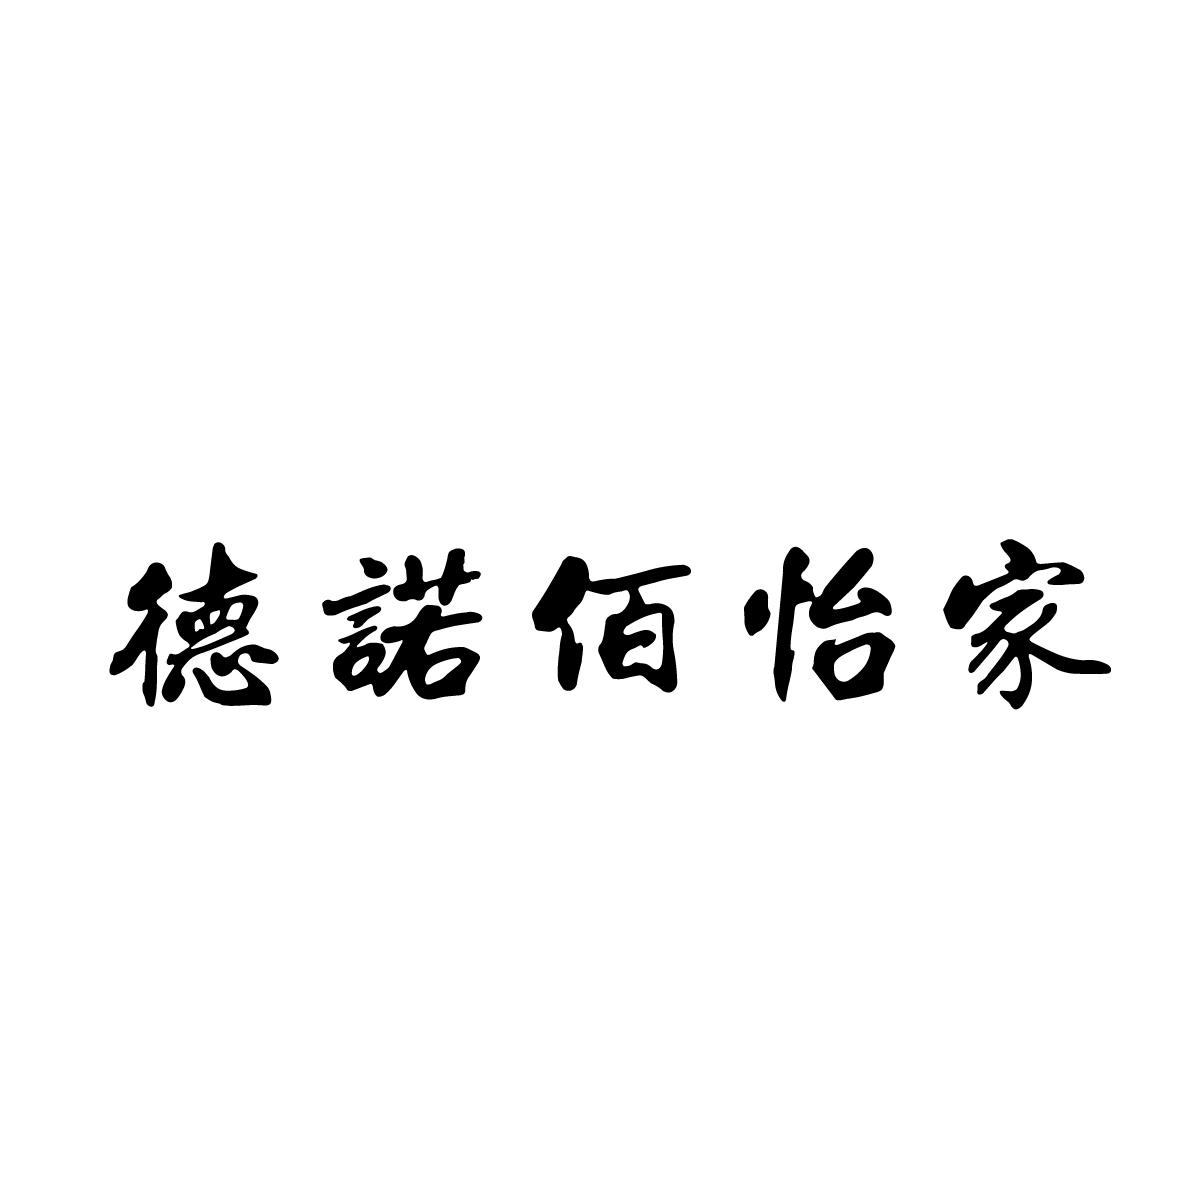 佰怡家logo图片